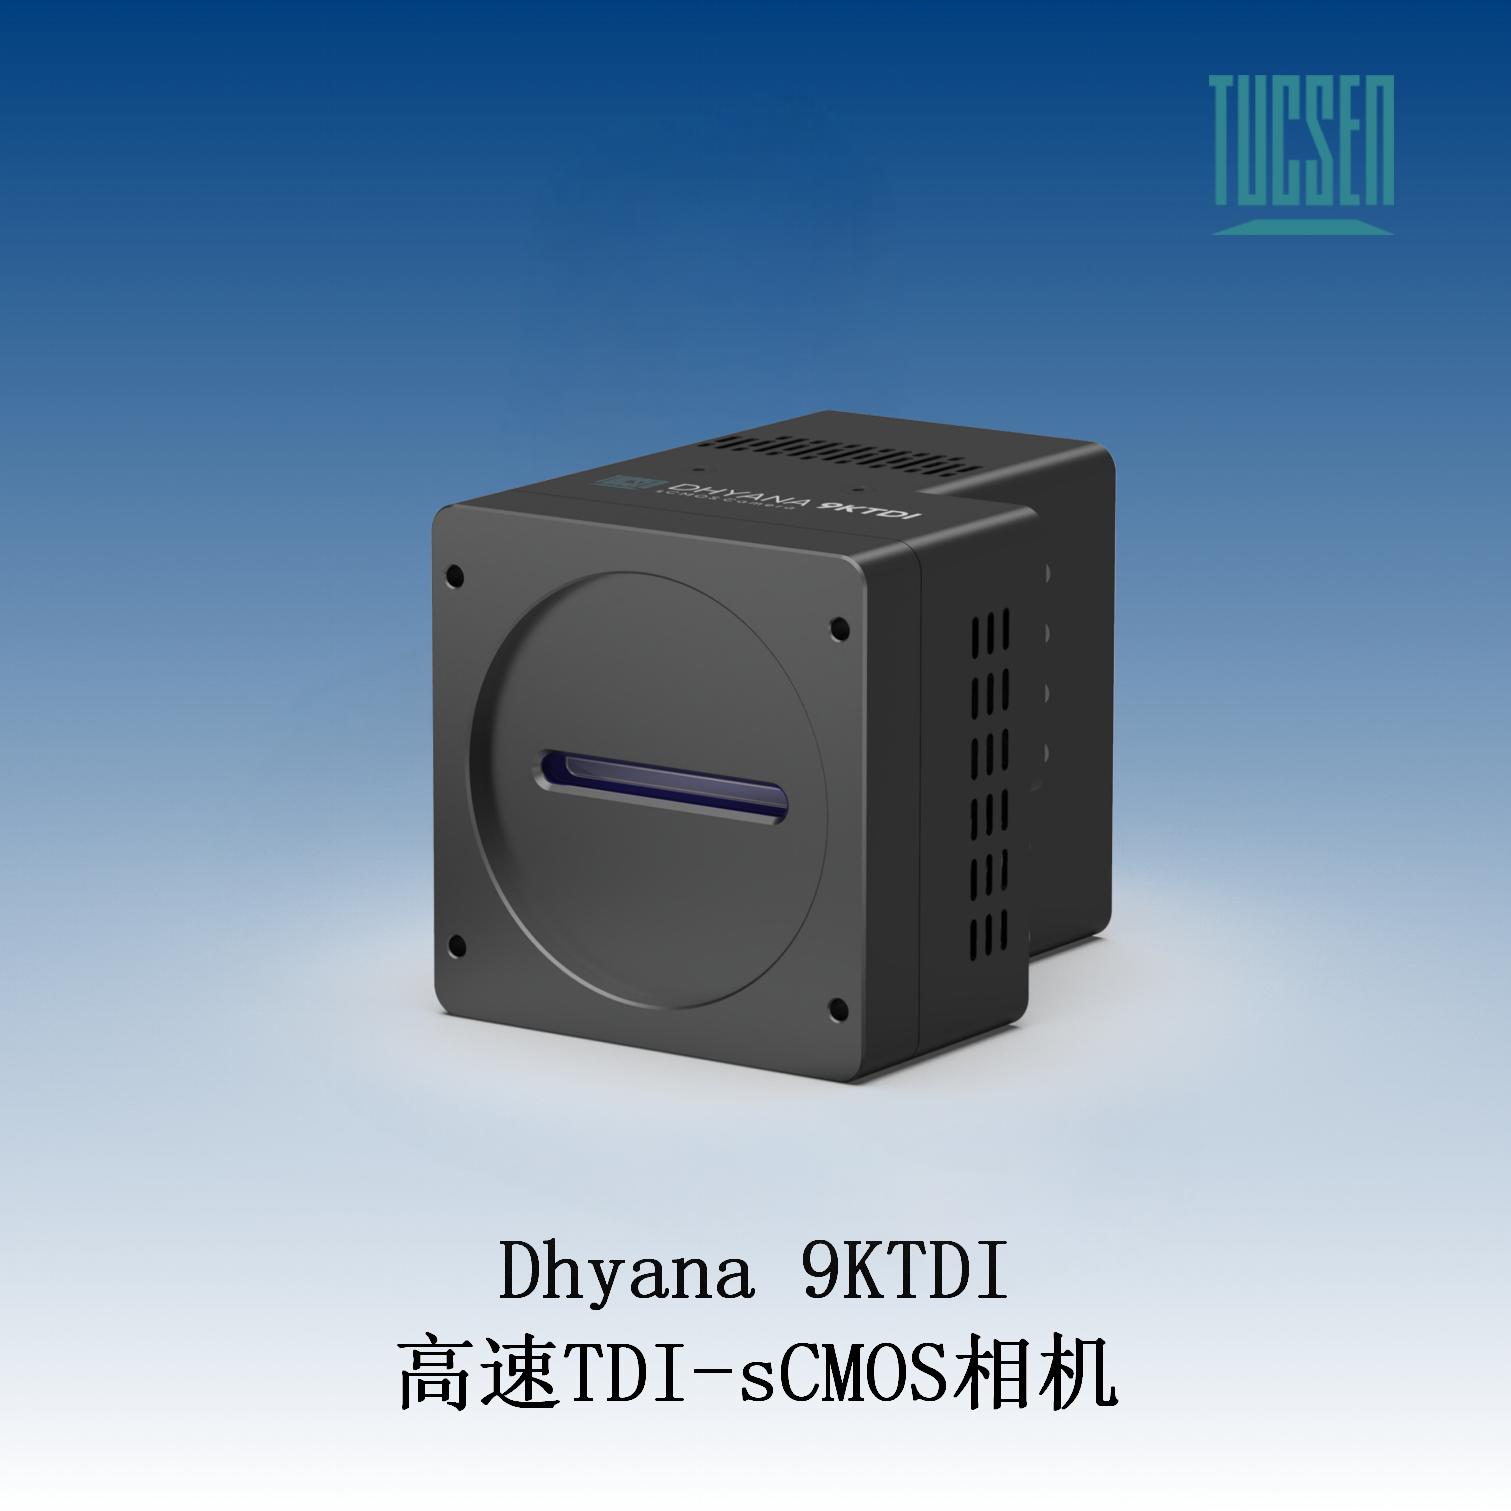 鑫图TUCSENCMOS相机Dhyana 9KTDI 高速TDI-sCMOS相机